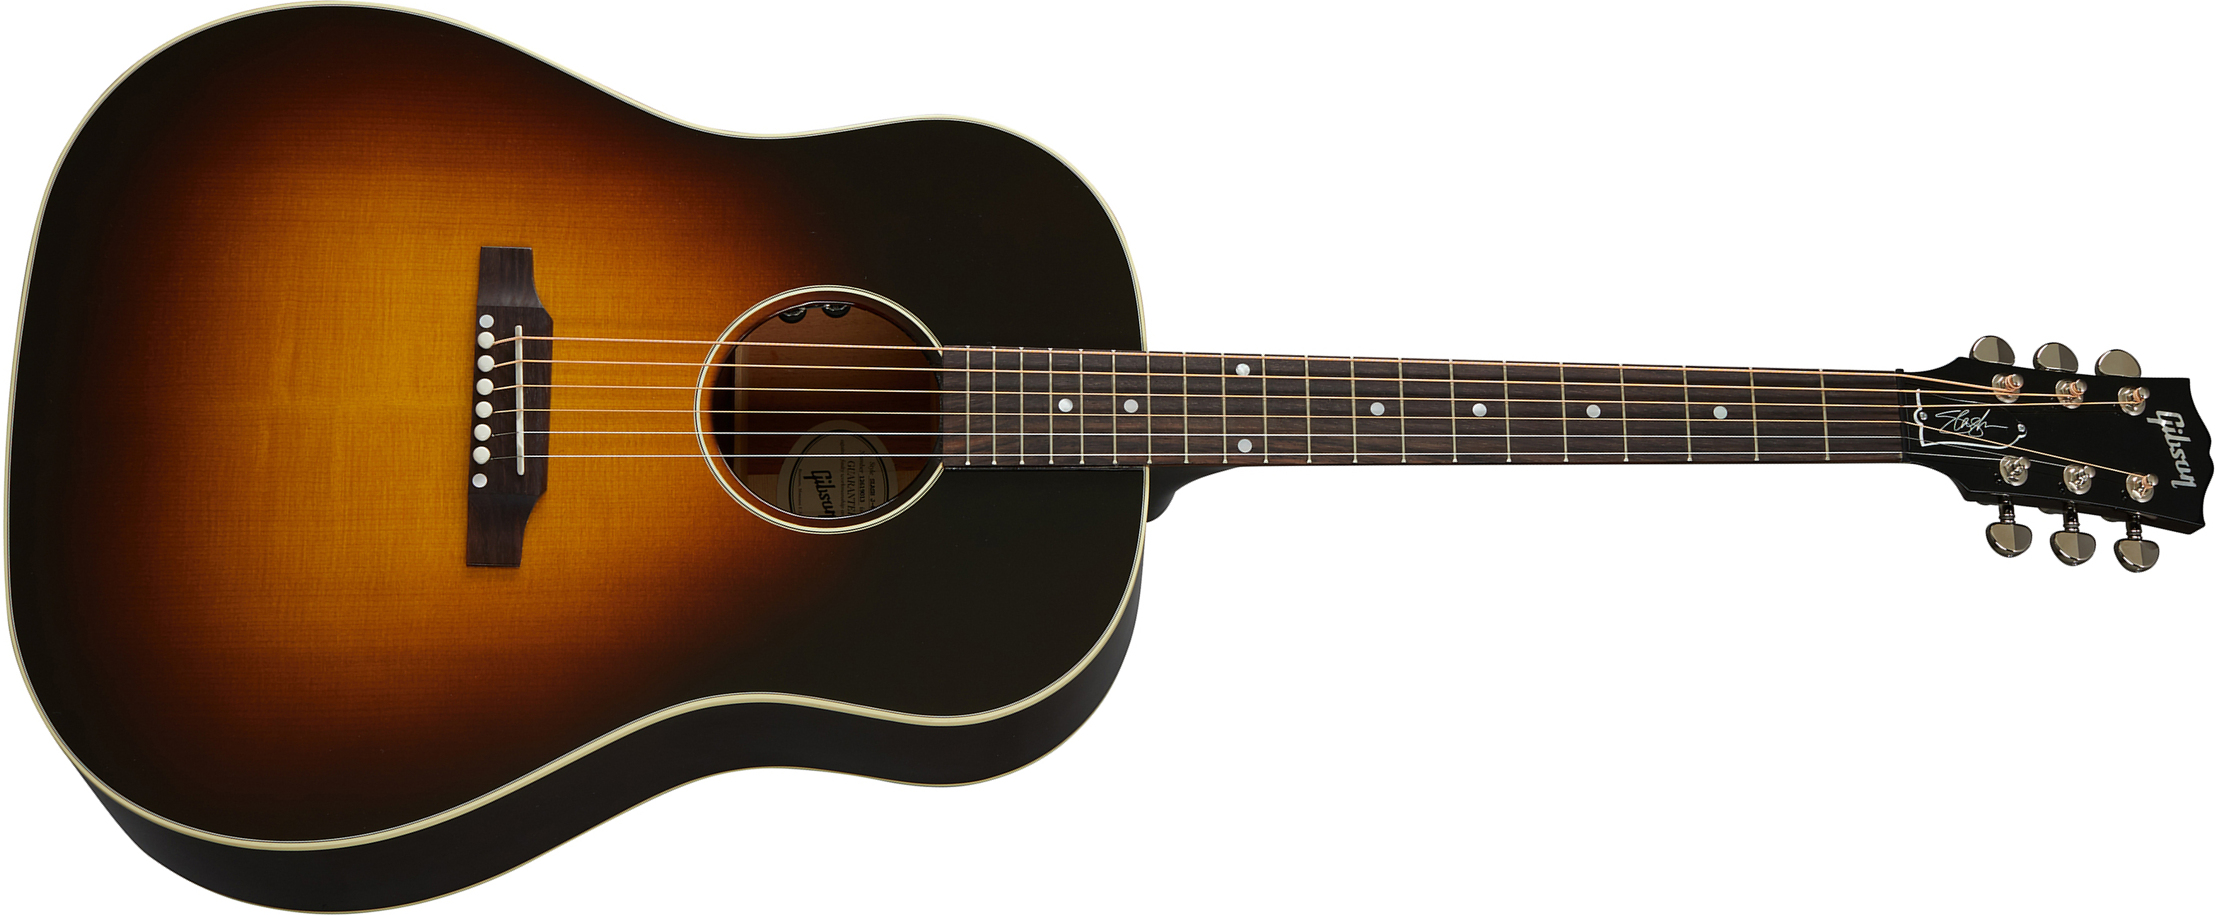 Gibson Slash J-45 2020 Signature Epicea Acajou Rw - November Burst - Elektroakustische Gitarre - Main picture